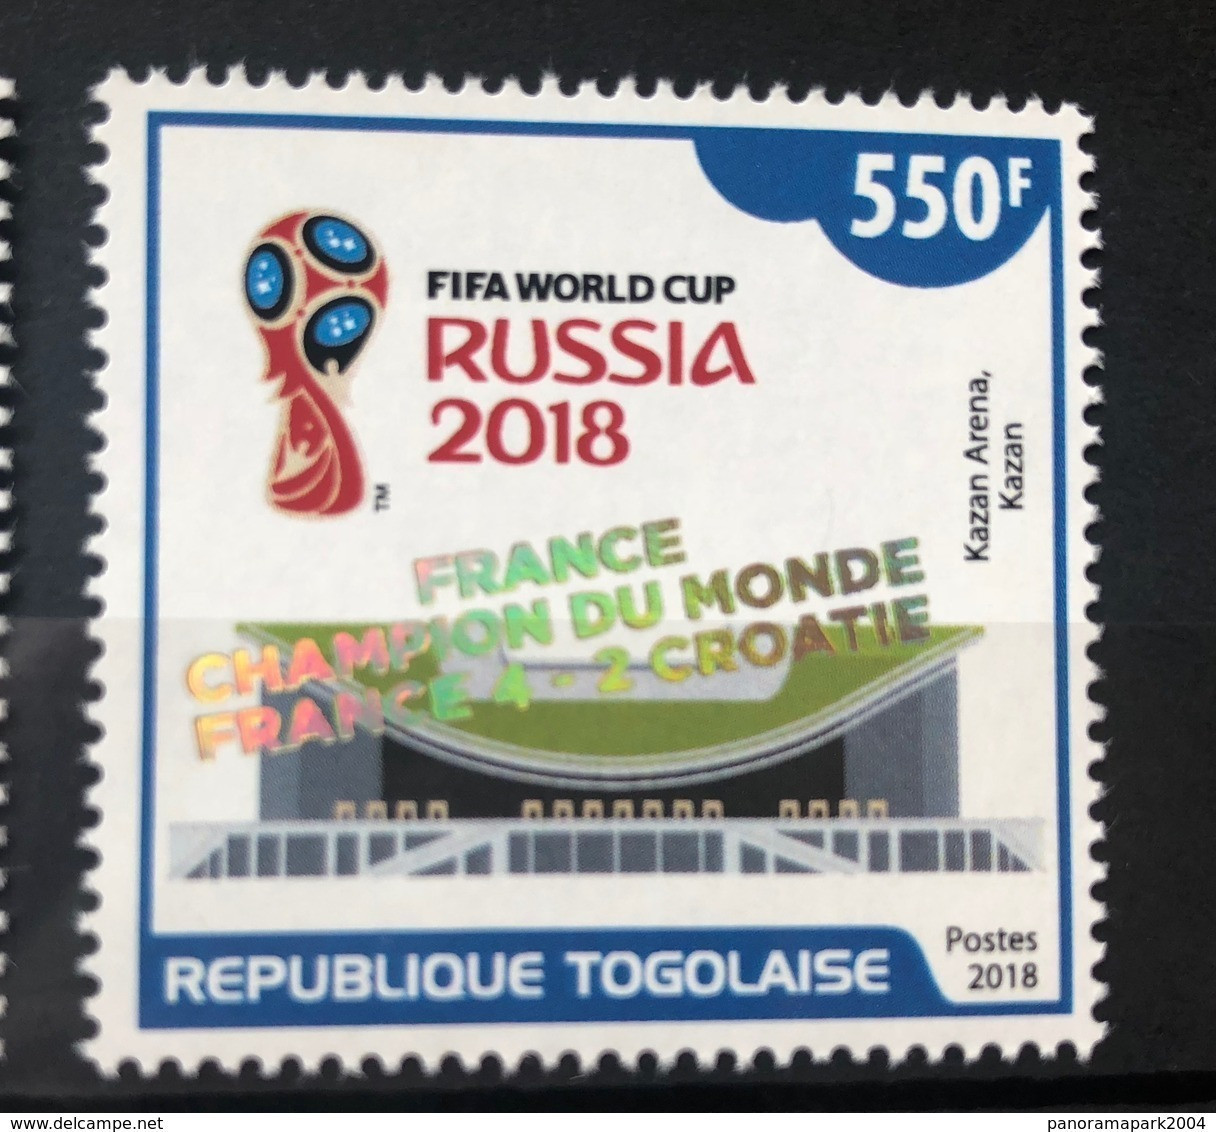 Togo 2018 Mi. ? Surch. Ovpt. "FRANCE CHAMPION" FIFA World Cup WM Coupe Du Monde HOLOGRAMME HOLOGRAM HOLOGRAMM - Holograms